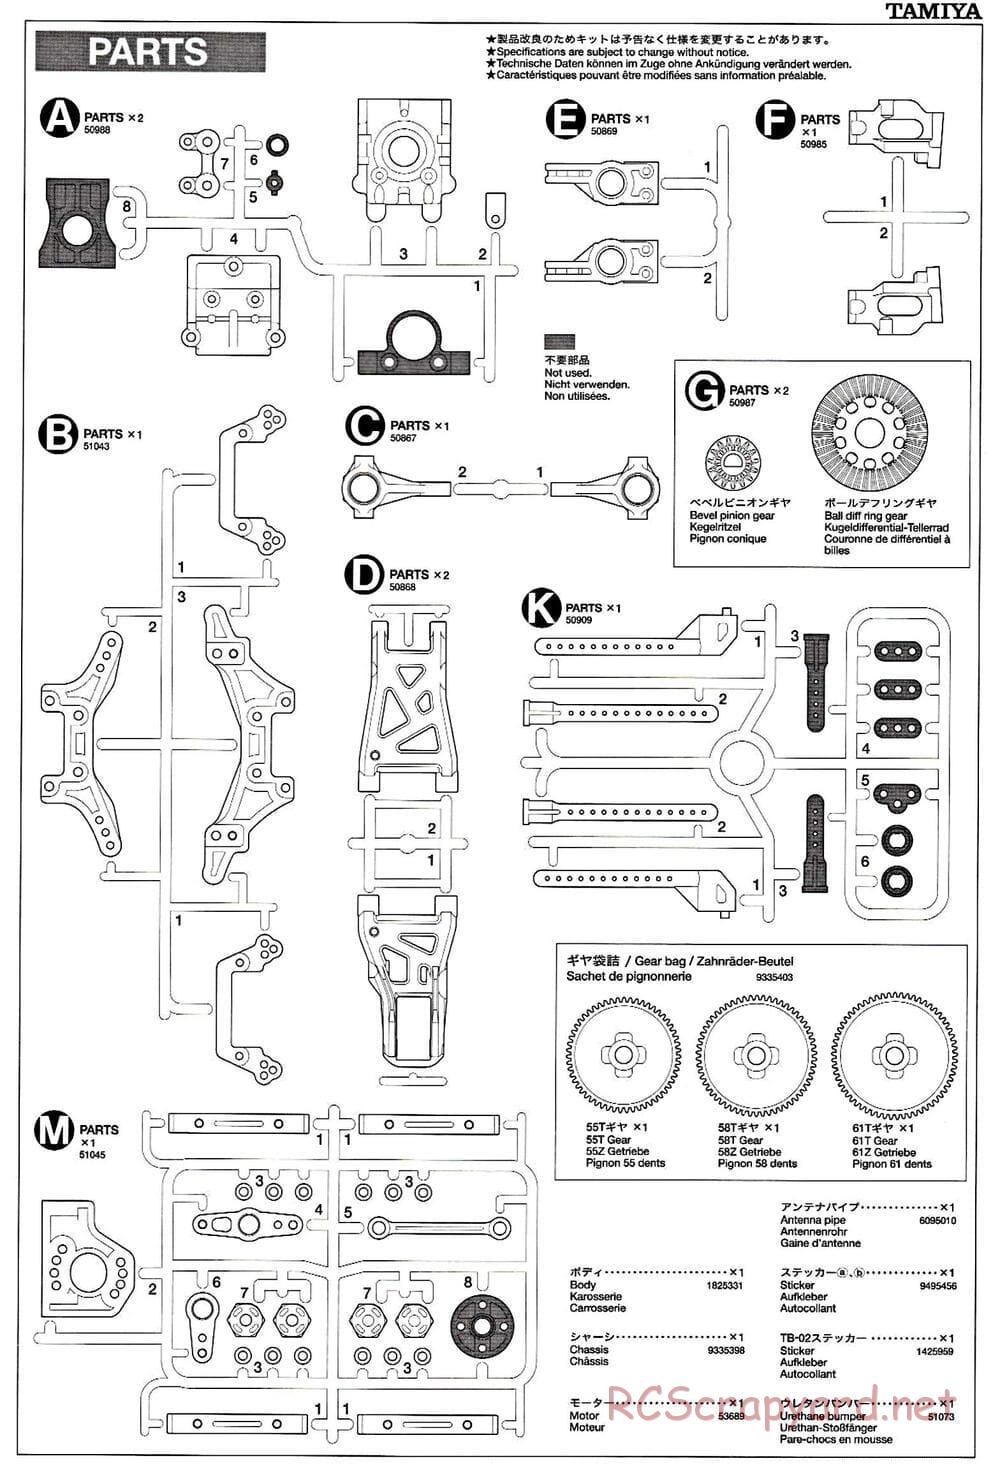 Tamiya - TB-02 Chassis - Manual - Page 20